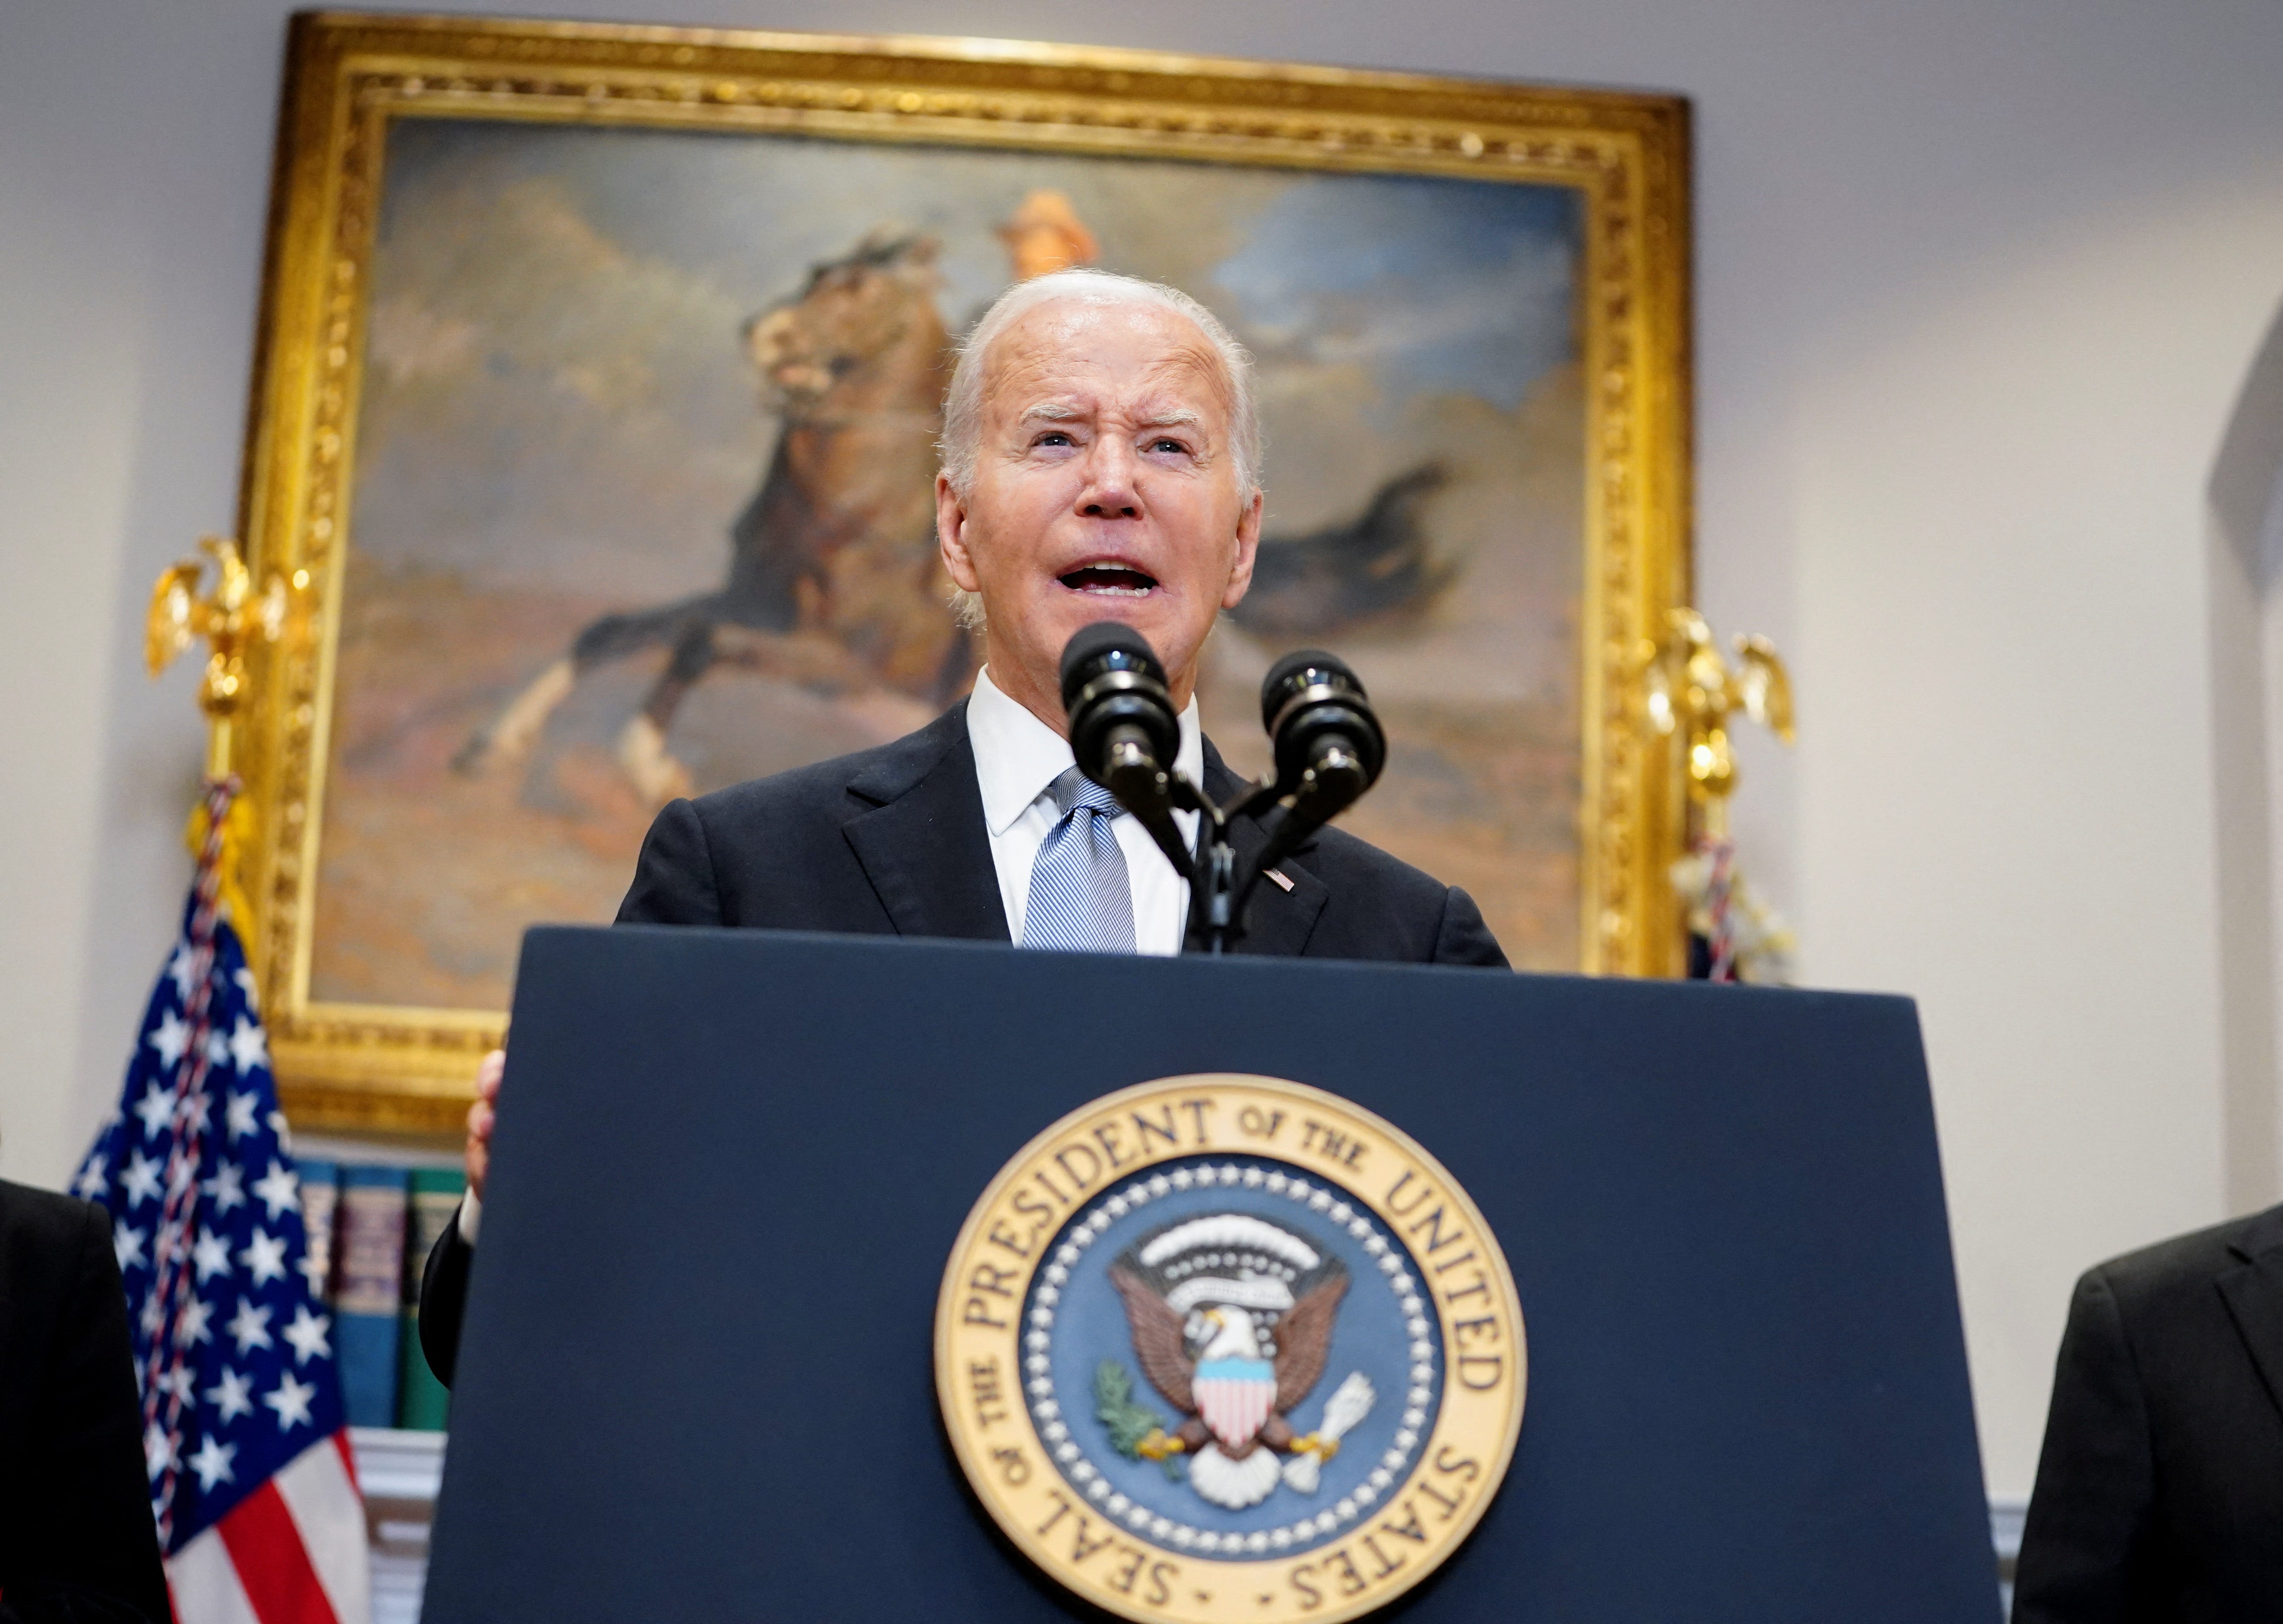 Joe Biden says politics can't be 'a battlefield' after Donald Trump assassination attempt